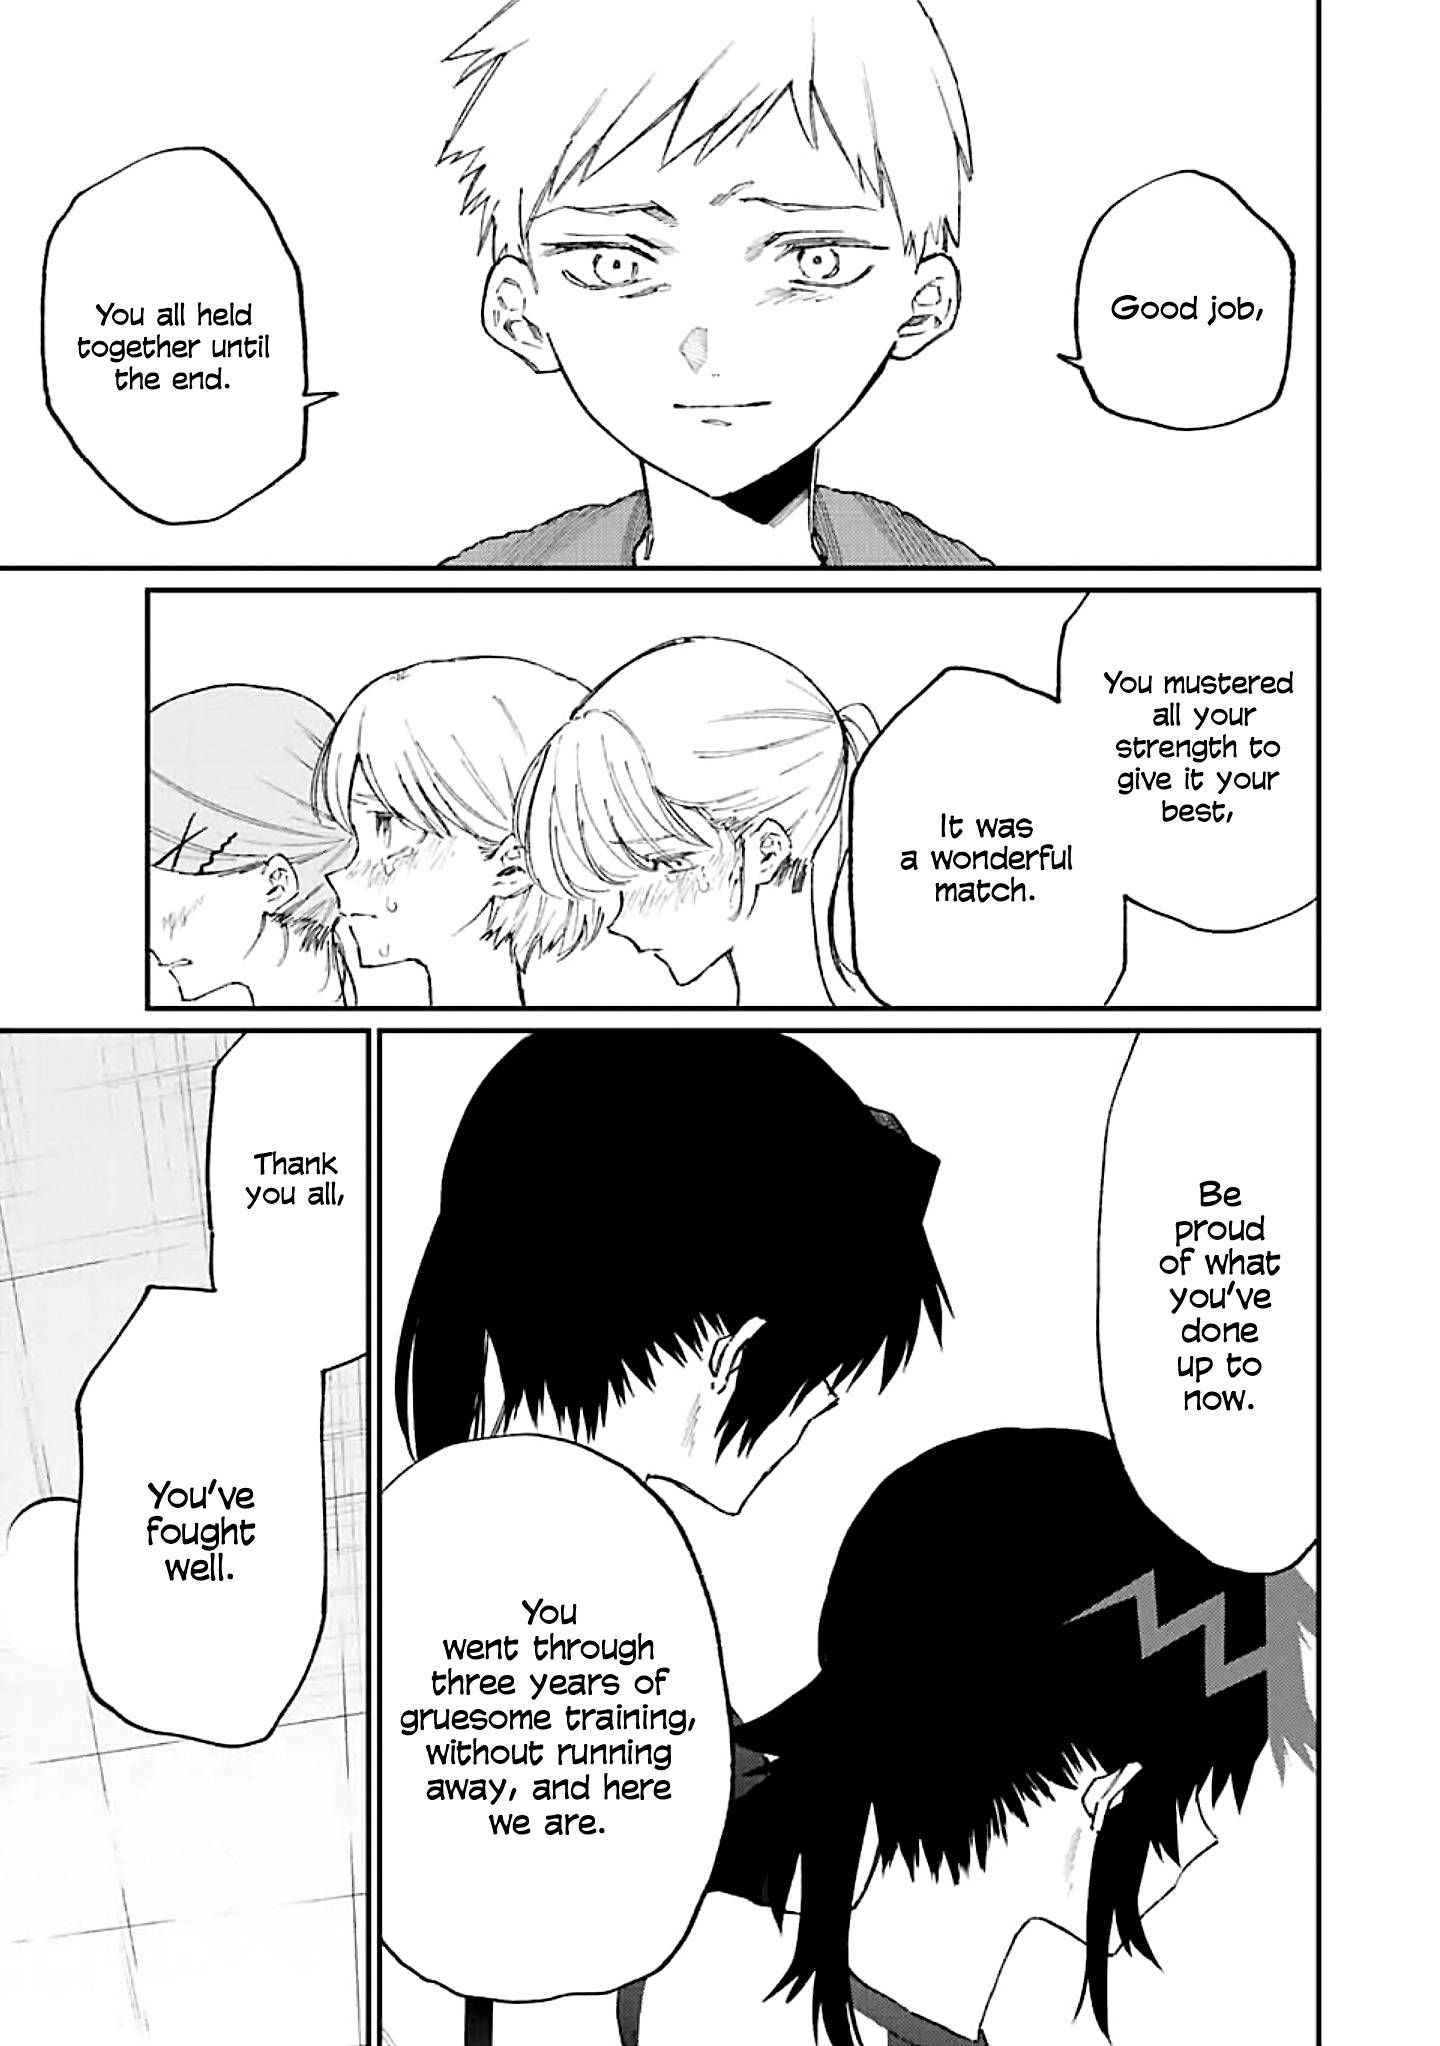 Shikimori's Not Just A Cutie - chapter 153 - #4